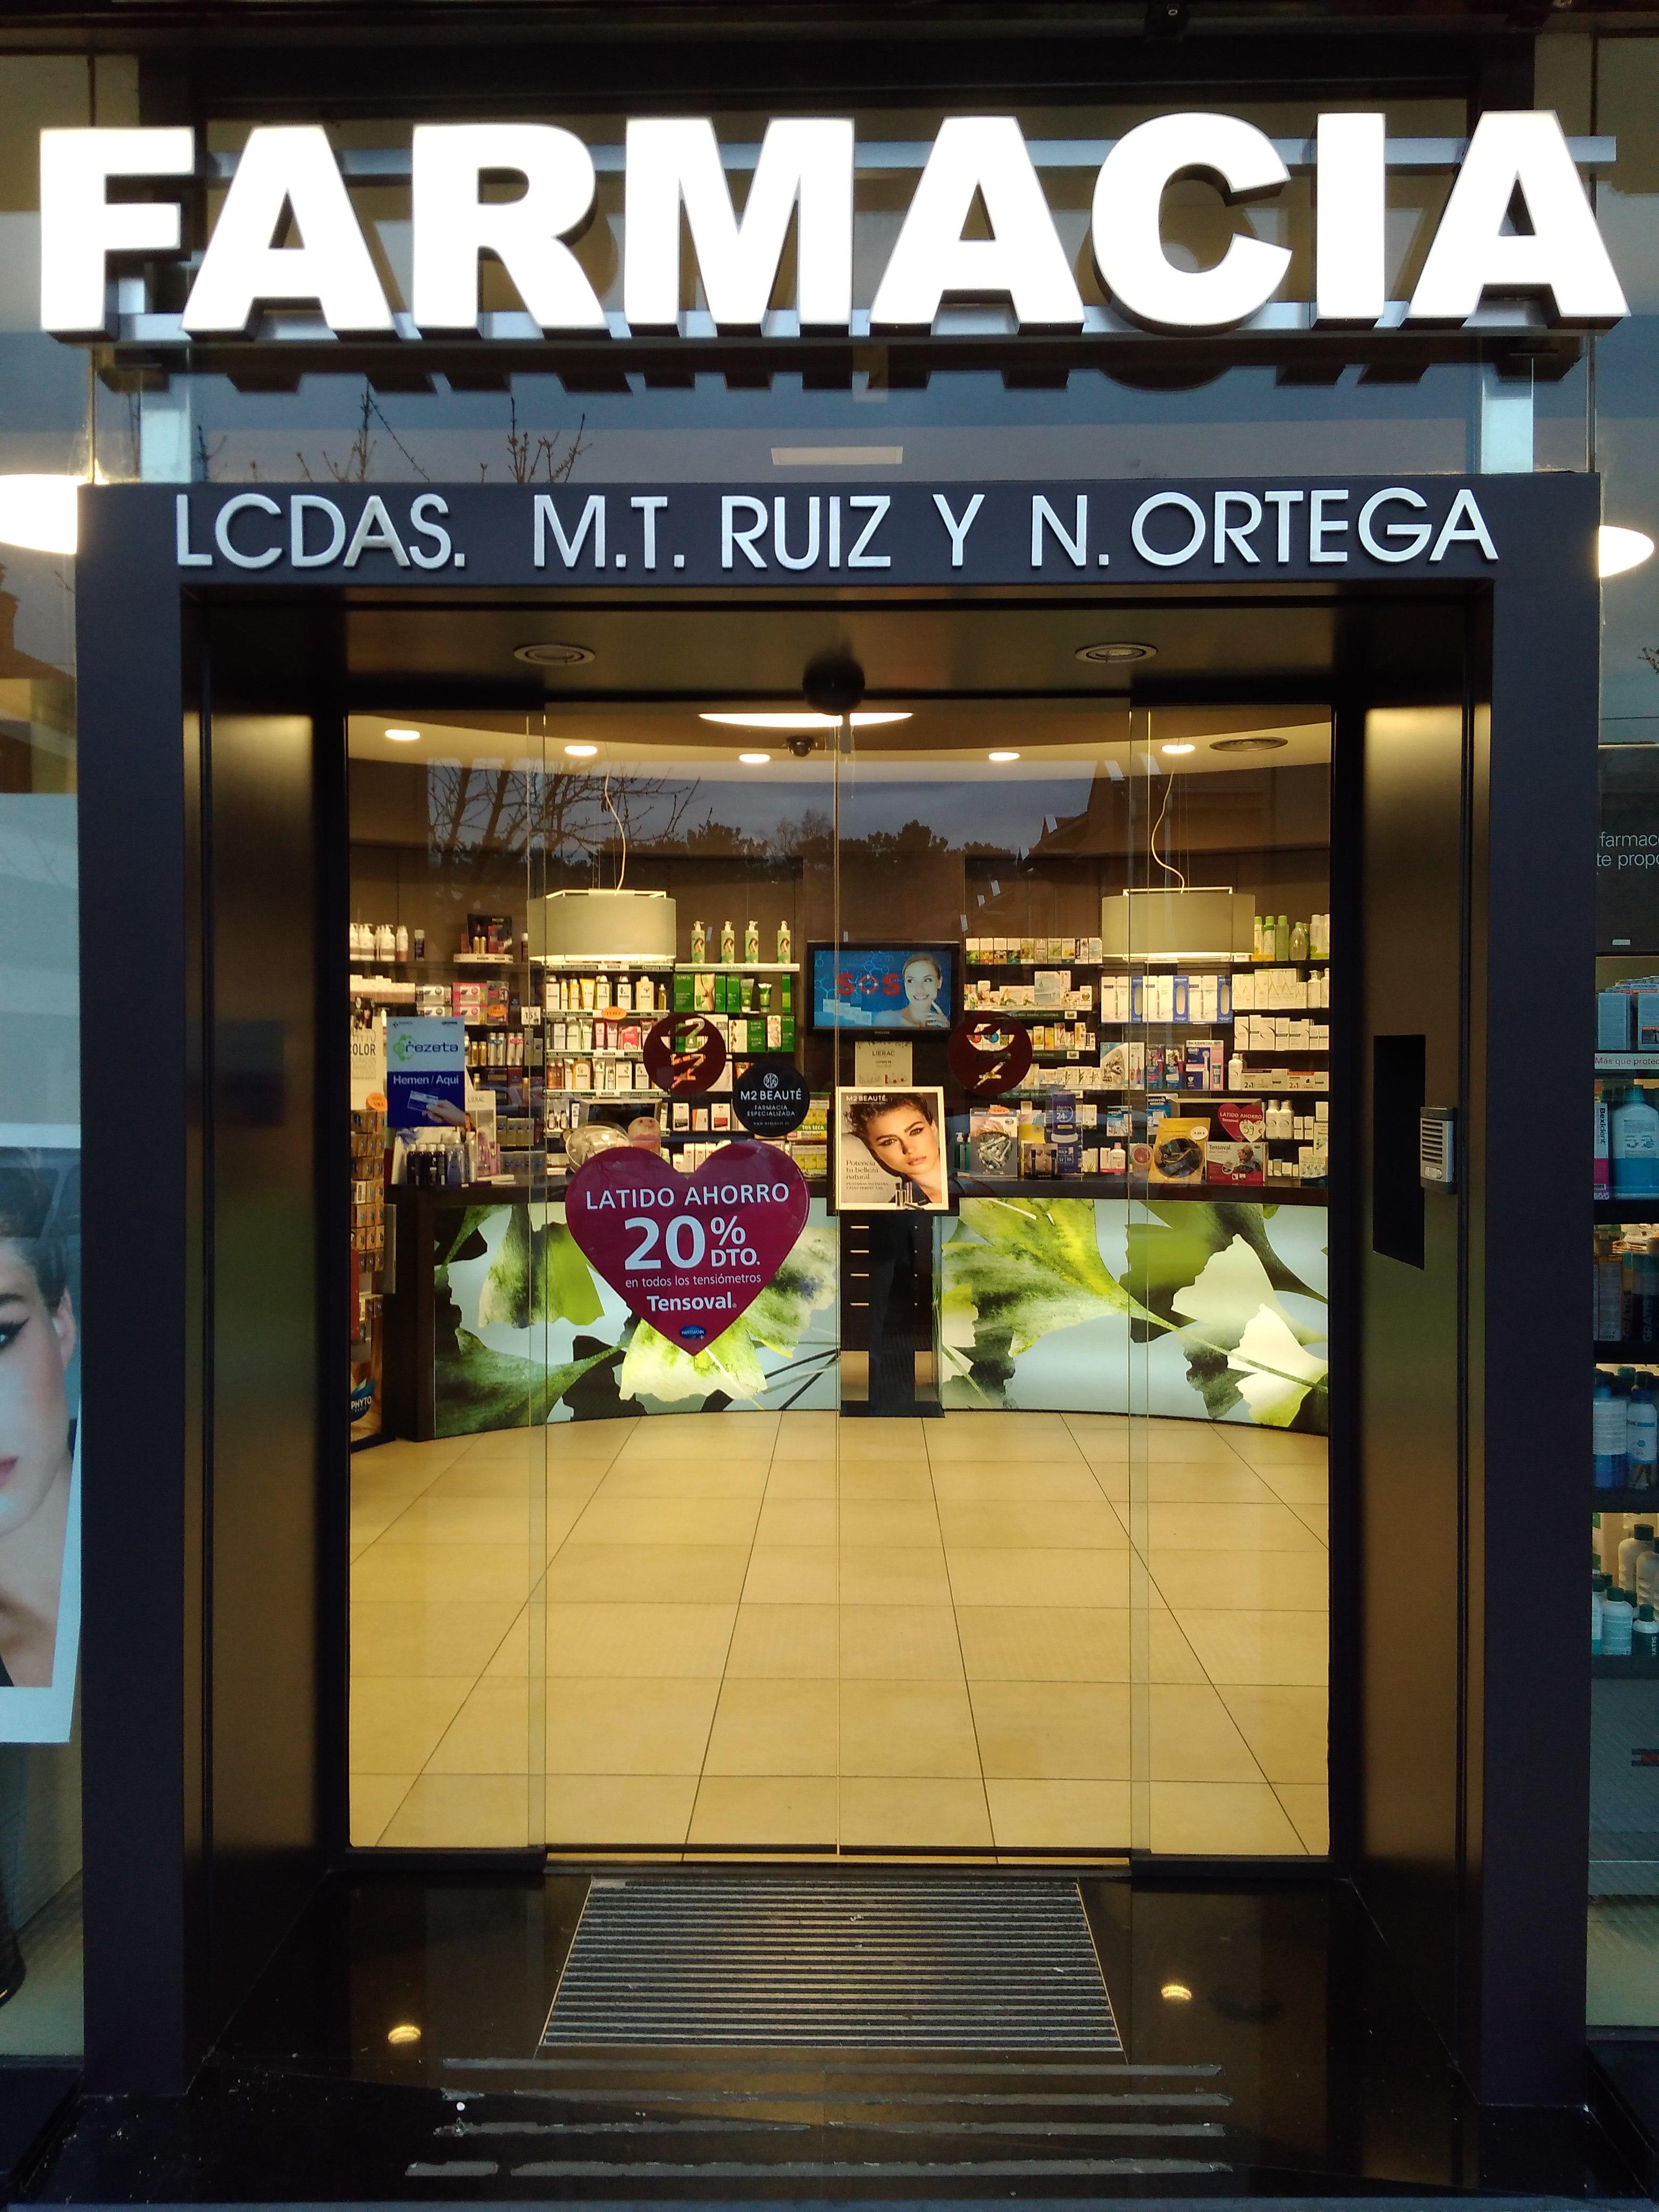 Images Farmacia Ruiz-Ortega